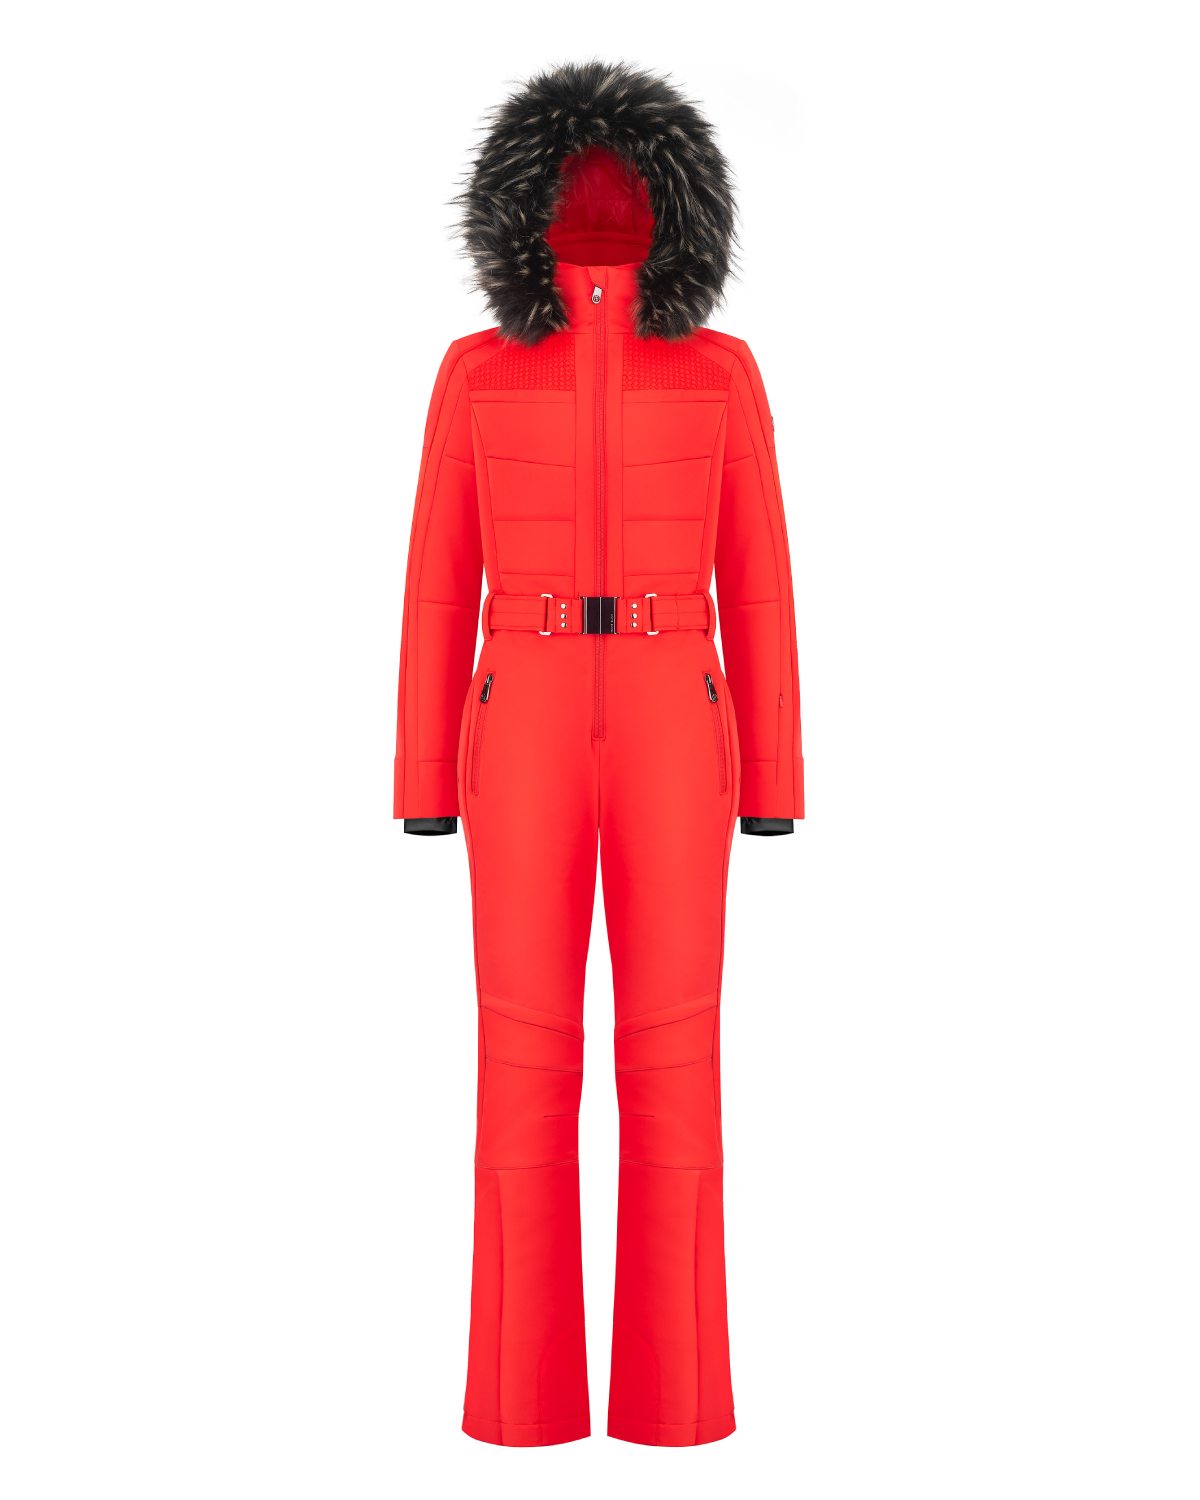 Poivre Blanc Women's Stretch Ski Suit in Scarlett Red